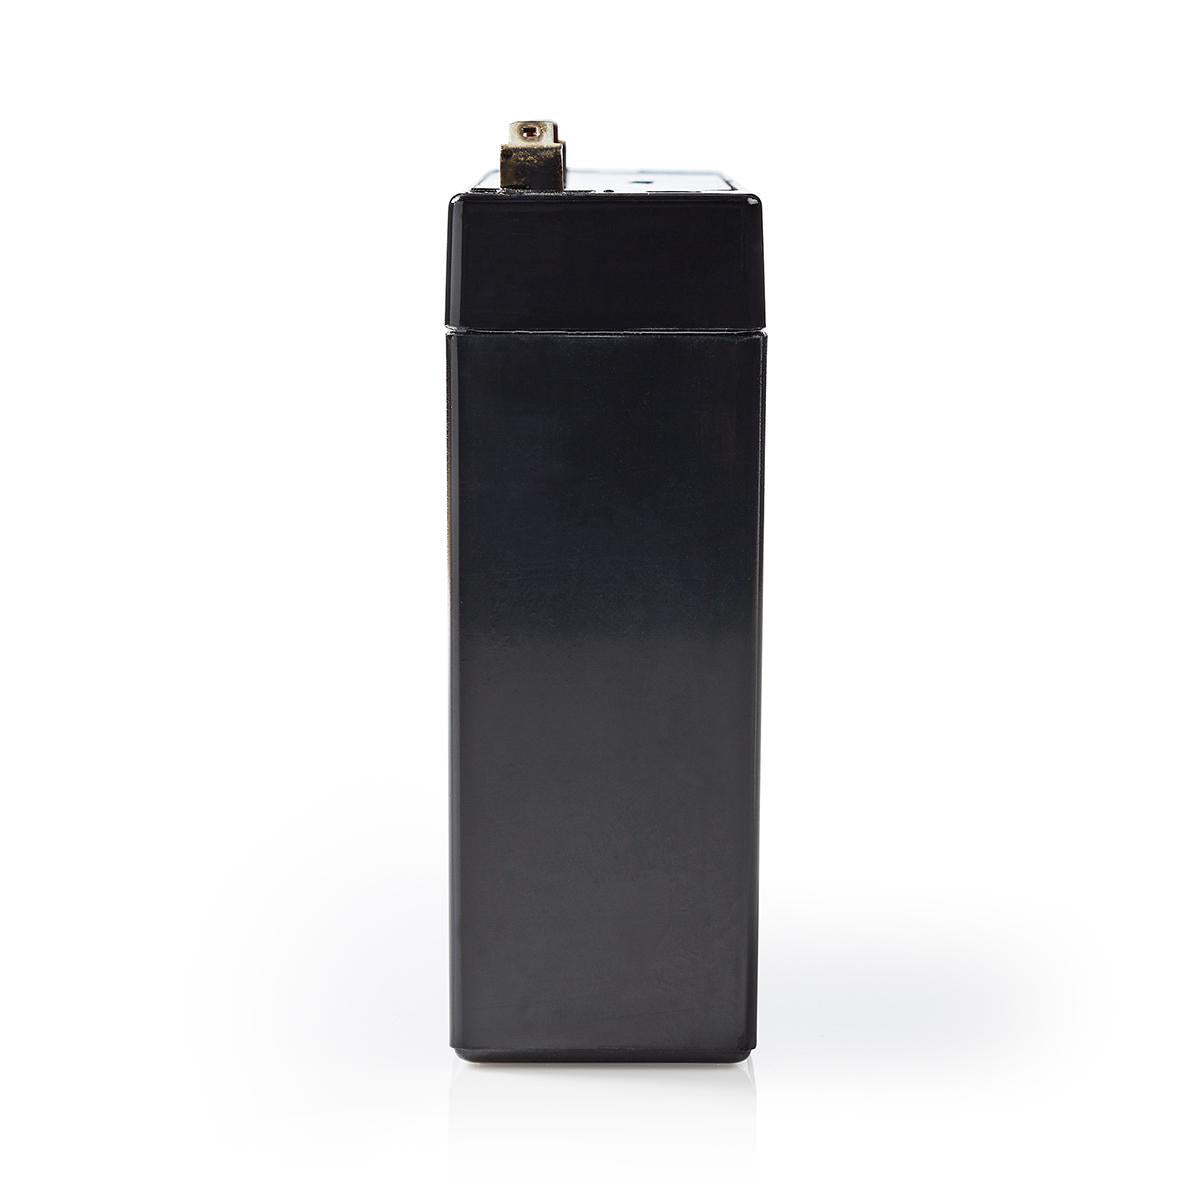 Wiederaufladbare Blei-Säure-Batterie | Bleisäure | Wiederaufladbar | 6 V | 7200 mAh